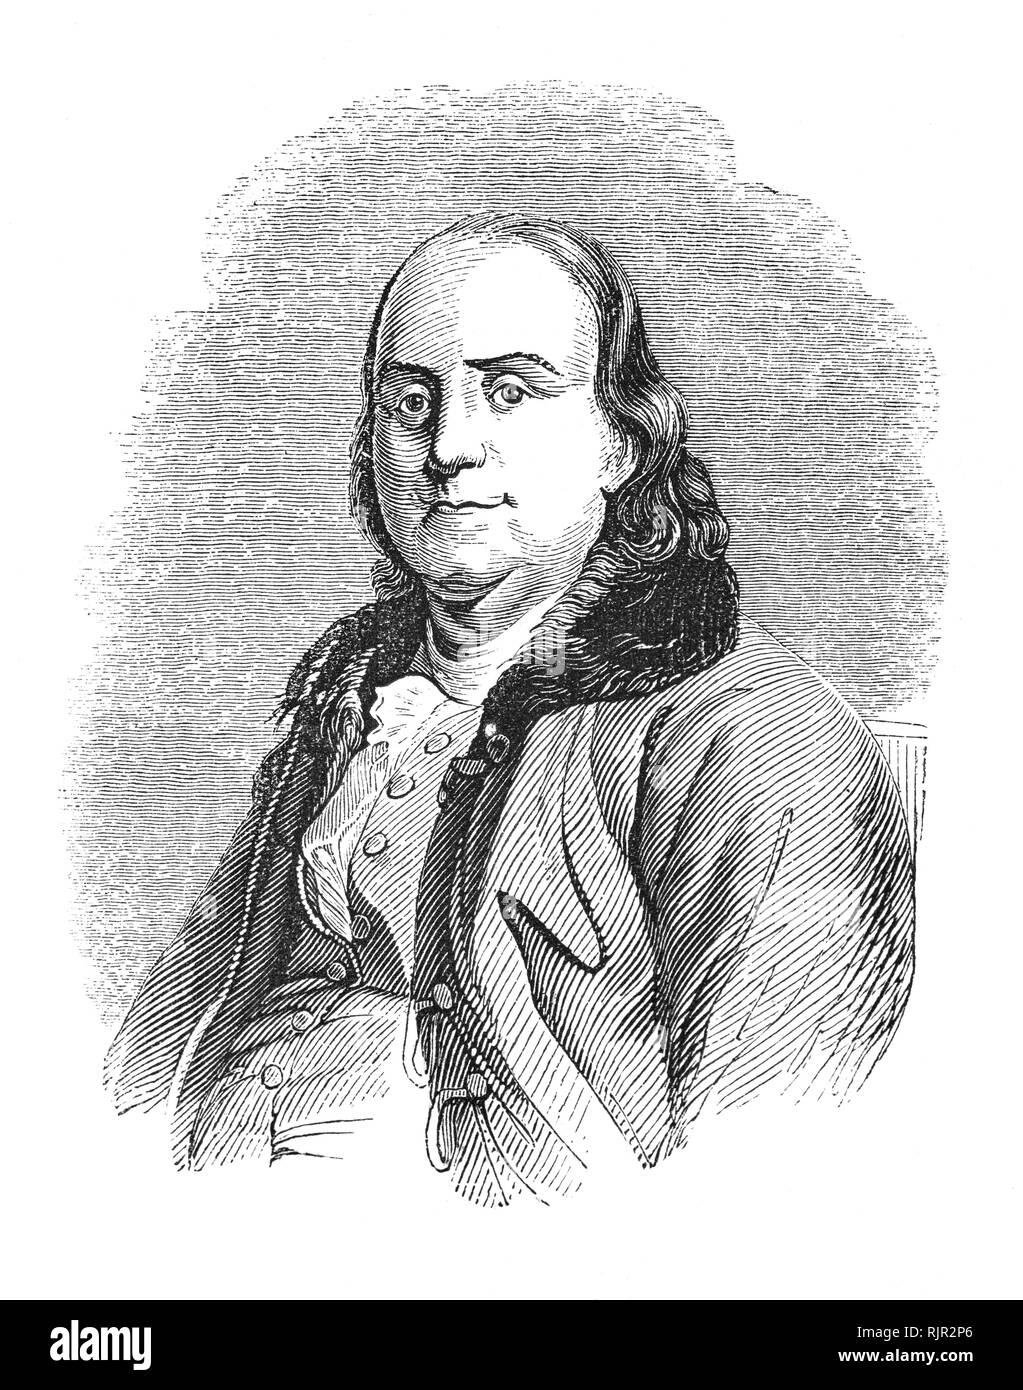 Un ritratto di Benjamin Franklin (1706-1790), un polymath americano e uno dei padri fondatori degli Stati Uniti. Franklin era un autore principale, una stampante, un teorico politico, un politico massone, postmaster, scienziato, inventore, UMORISTA, attivista civica, statista e diplomatico. Come scienziato, egli è stato una figura importante nella American Illuminismo e la storia della fisica per le sue scoperte e le teorie in materia di elettricità. Come un inventore, egli è conosciuto per l'asta parafulmini, bifocali, e la stufa Franklin, tra le altre invenzioni. Foto Stock